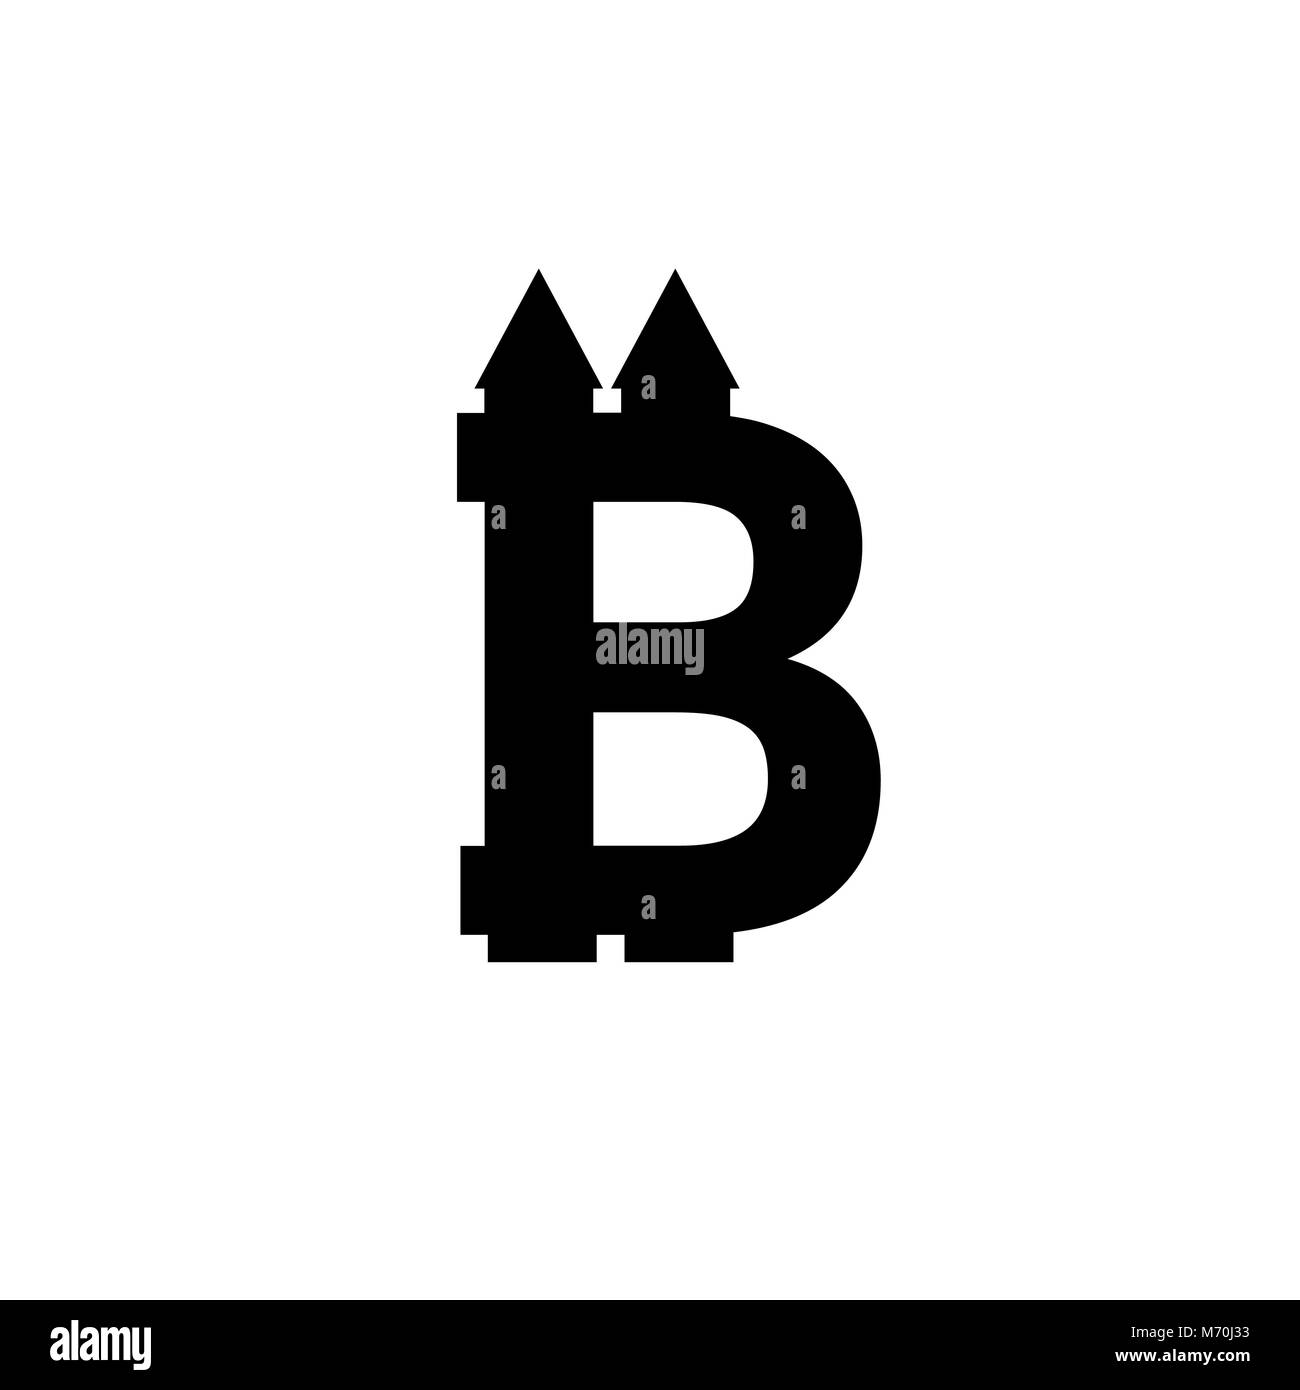 Icône de signe Bitcoin pour internet l'argent. Symbole monétaire Crypto et image de pièce pour l'utilisation dans des projets web ou applications mobiles. Blockchain cryptocurrency sécurisés. Illustration de Vecteur